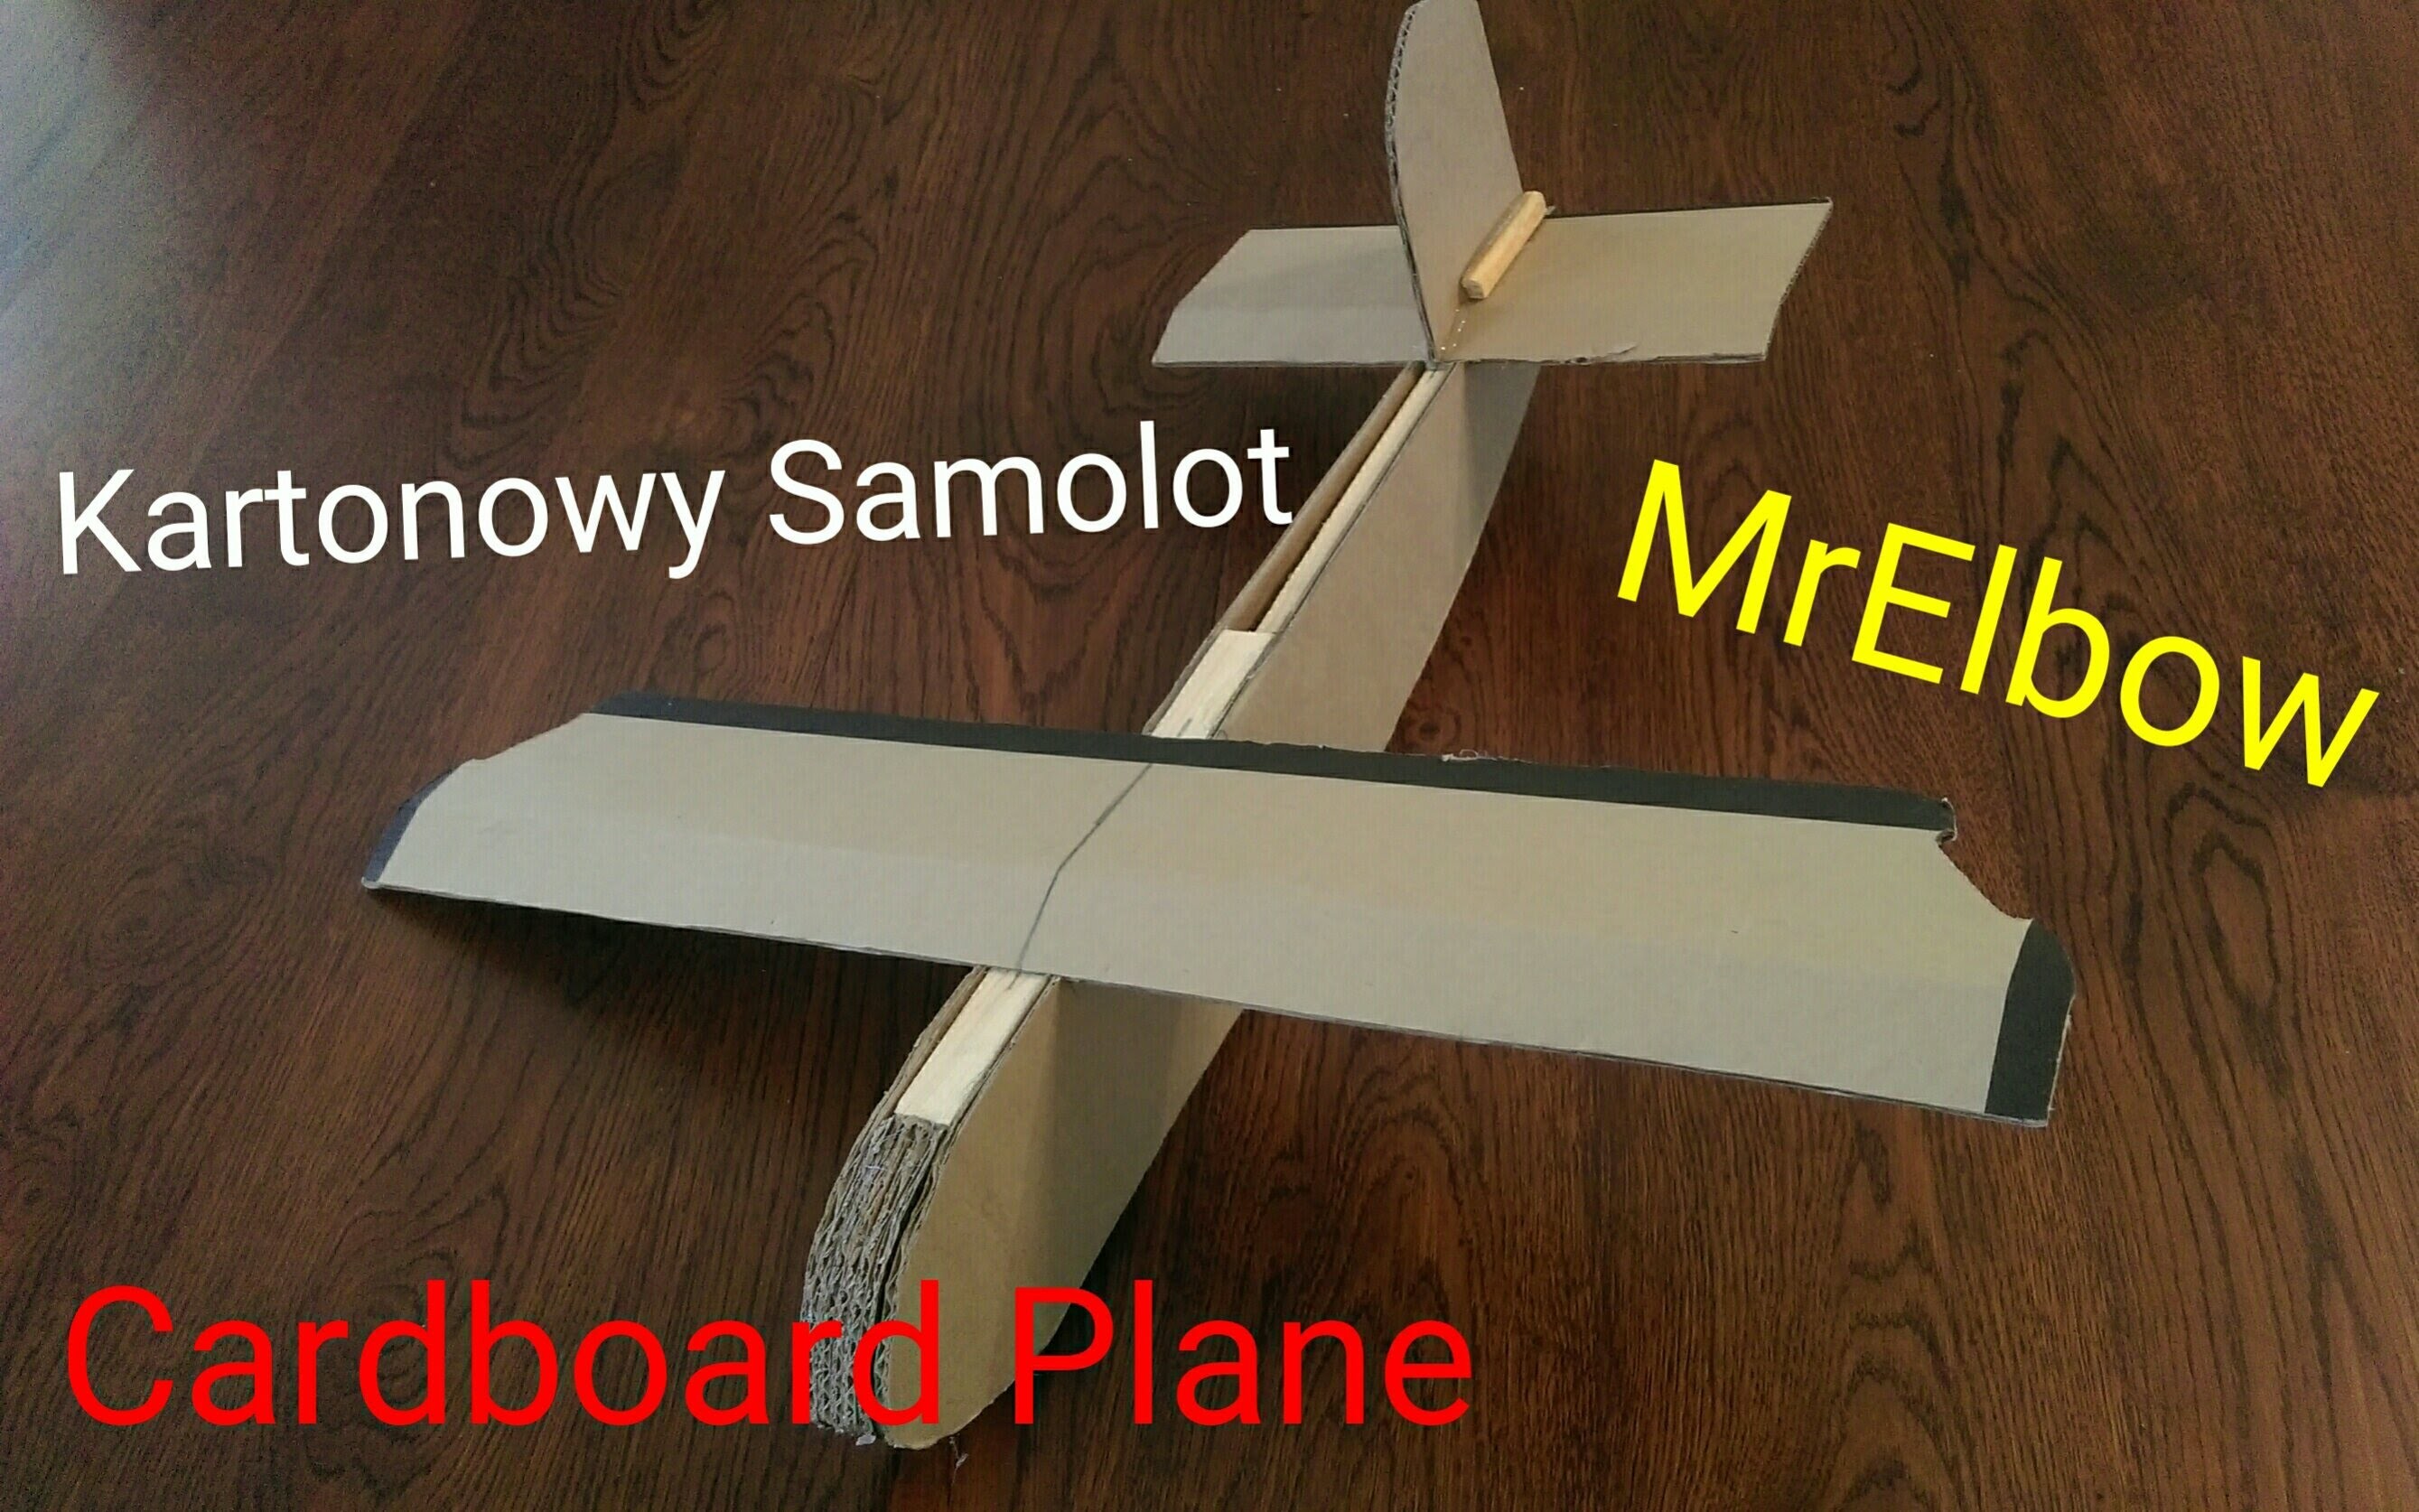 How to make cardboard plane. Jak zrobić kartonowy samolot !HD!DIY! Tutorial. _)MrElbow(_